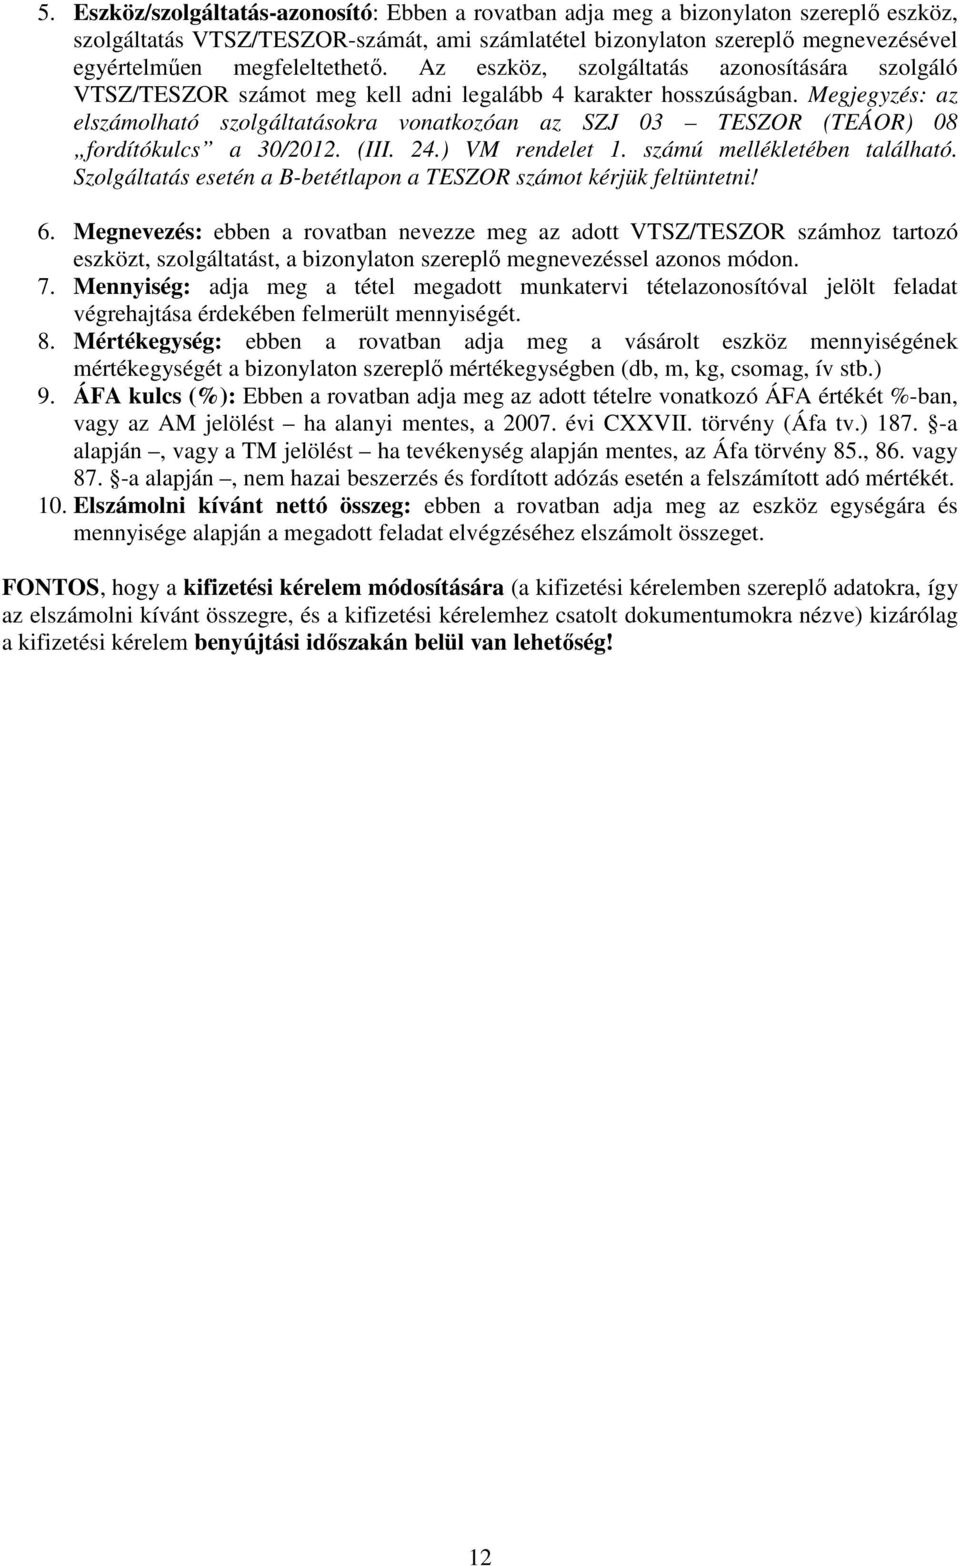 Megjegyzés: az elszámolható szolgáltatásokra vonatkozóan az SZJ 03 TESZOR (TEÁOR) 08 fordítókulcs a 30/2012. (III. 24.) VM rendelet 1. számú mellékletében található.